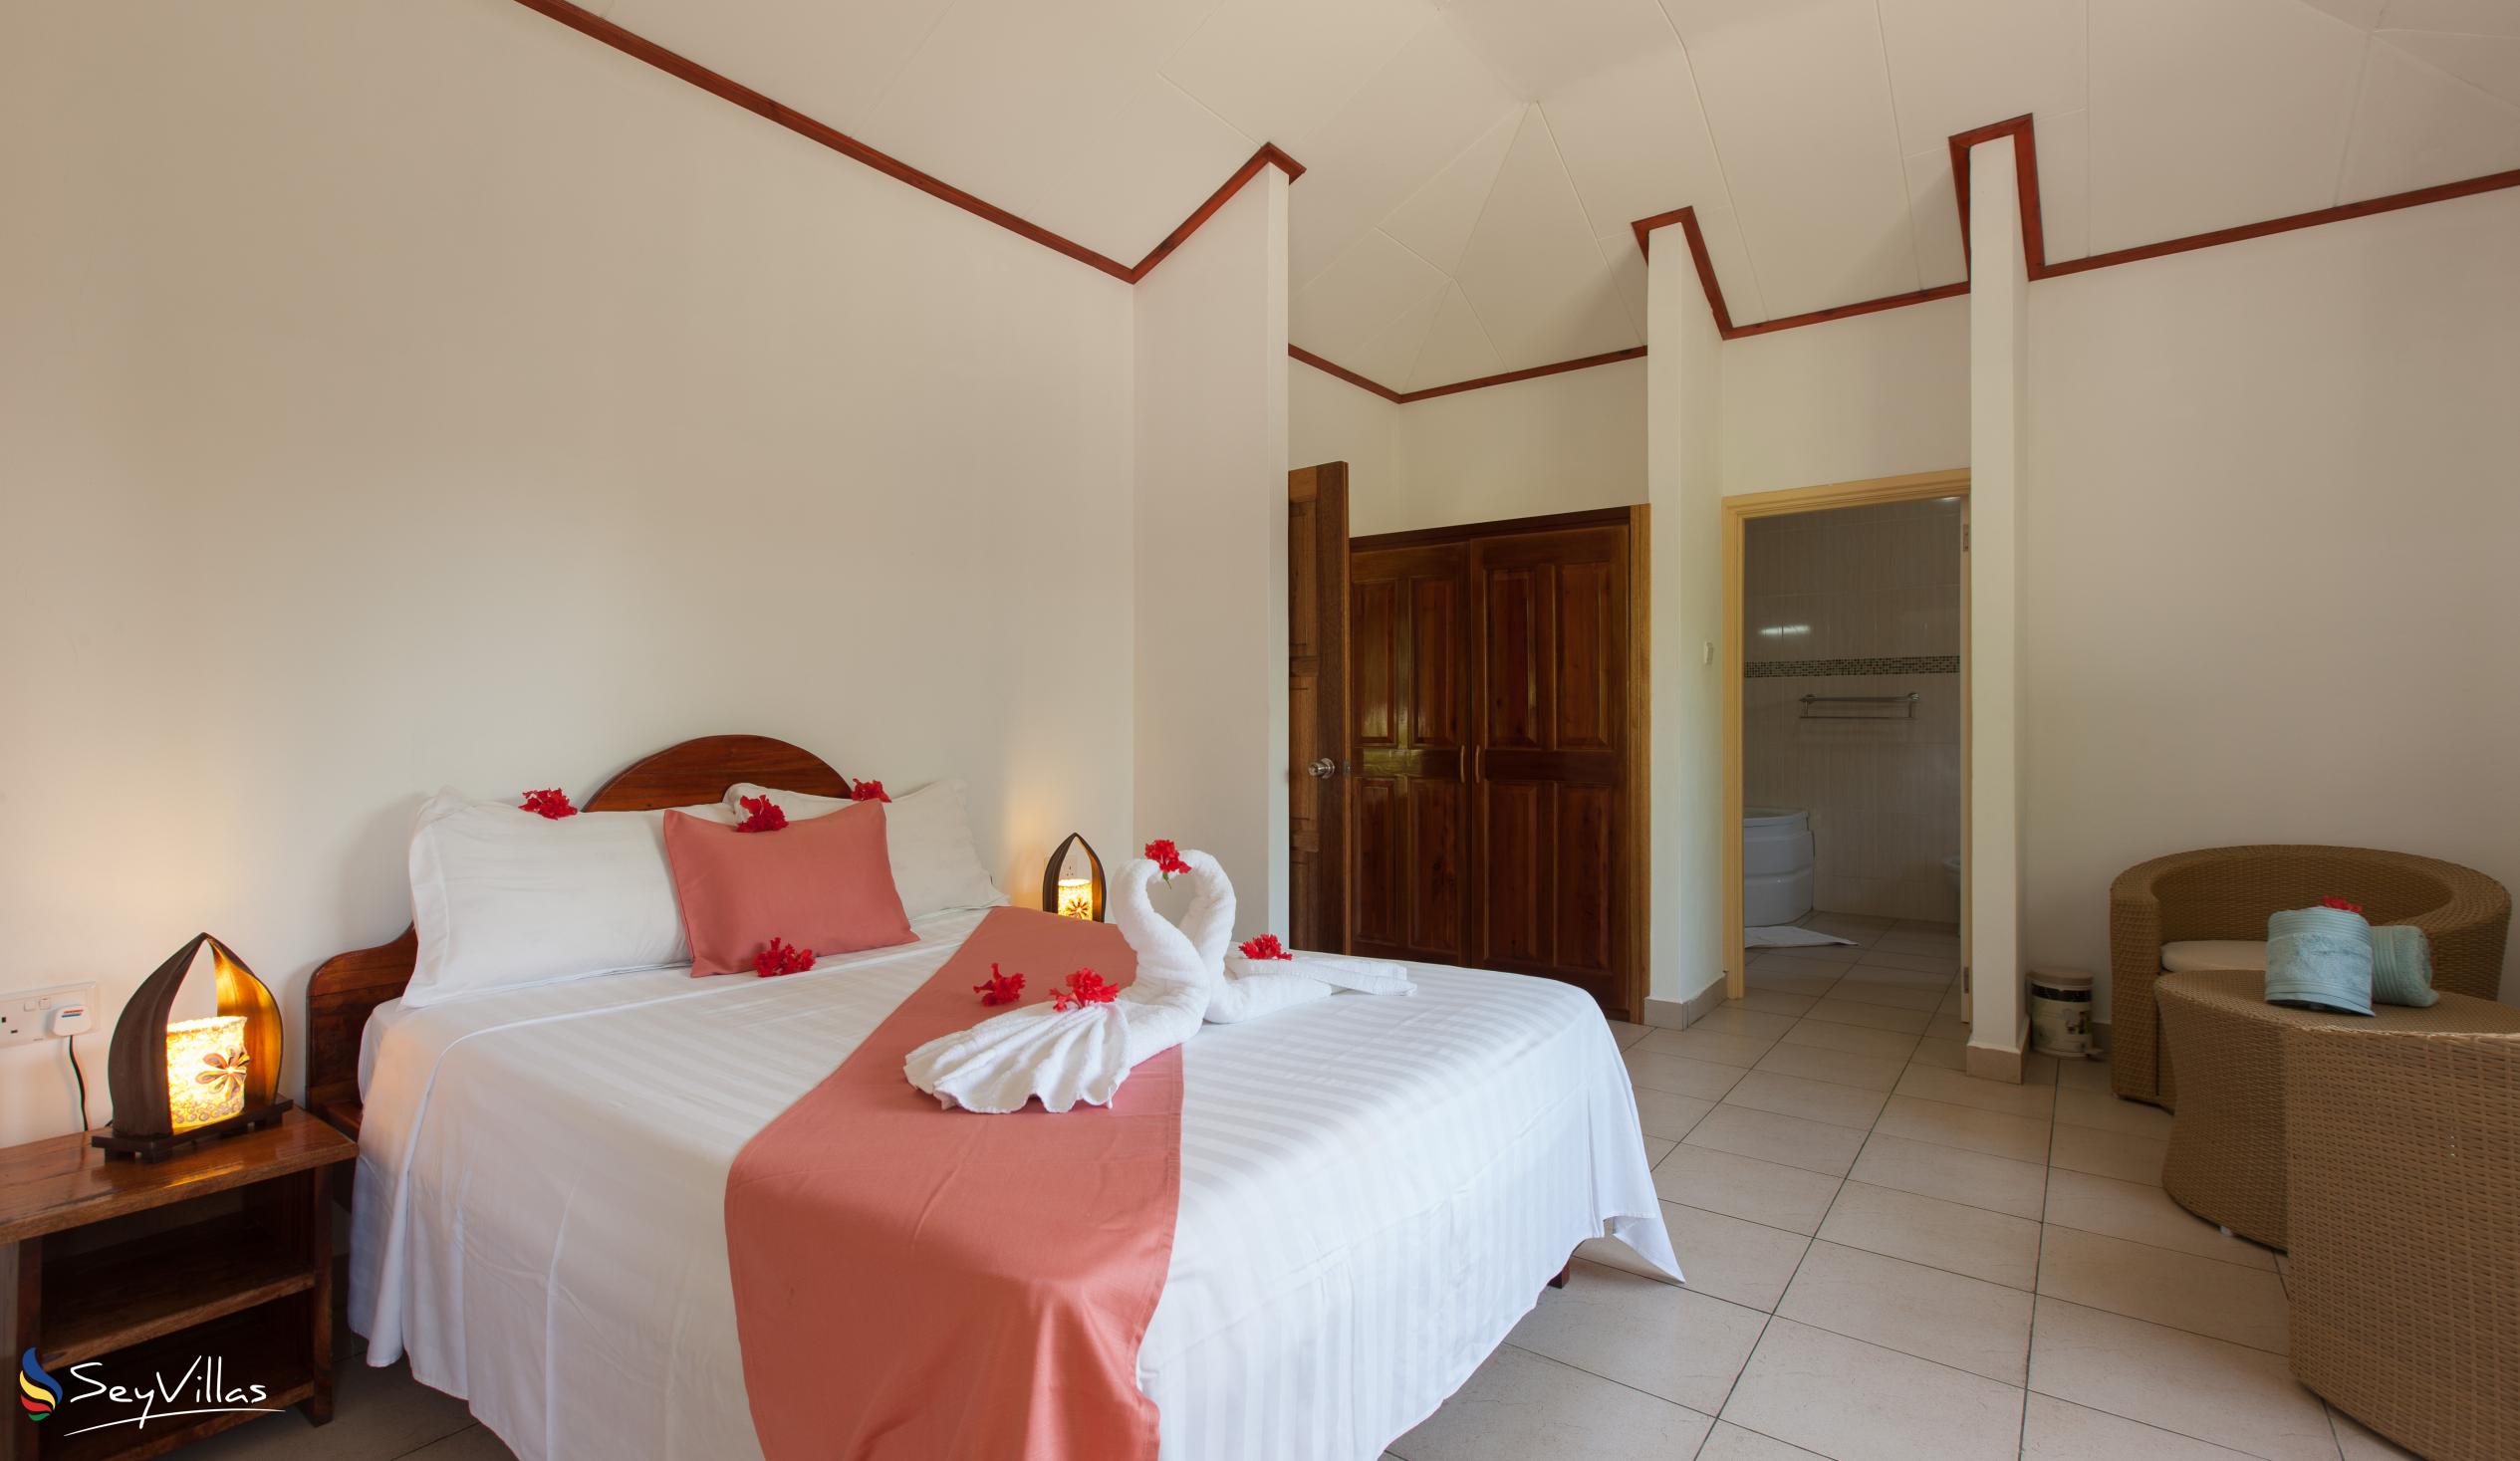 Photo 17: Hostellerie La Digue - 3-Bedroom Chalet - La Digue (Seychelles)